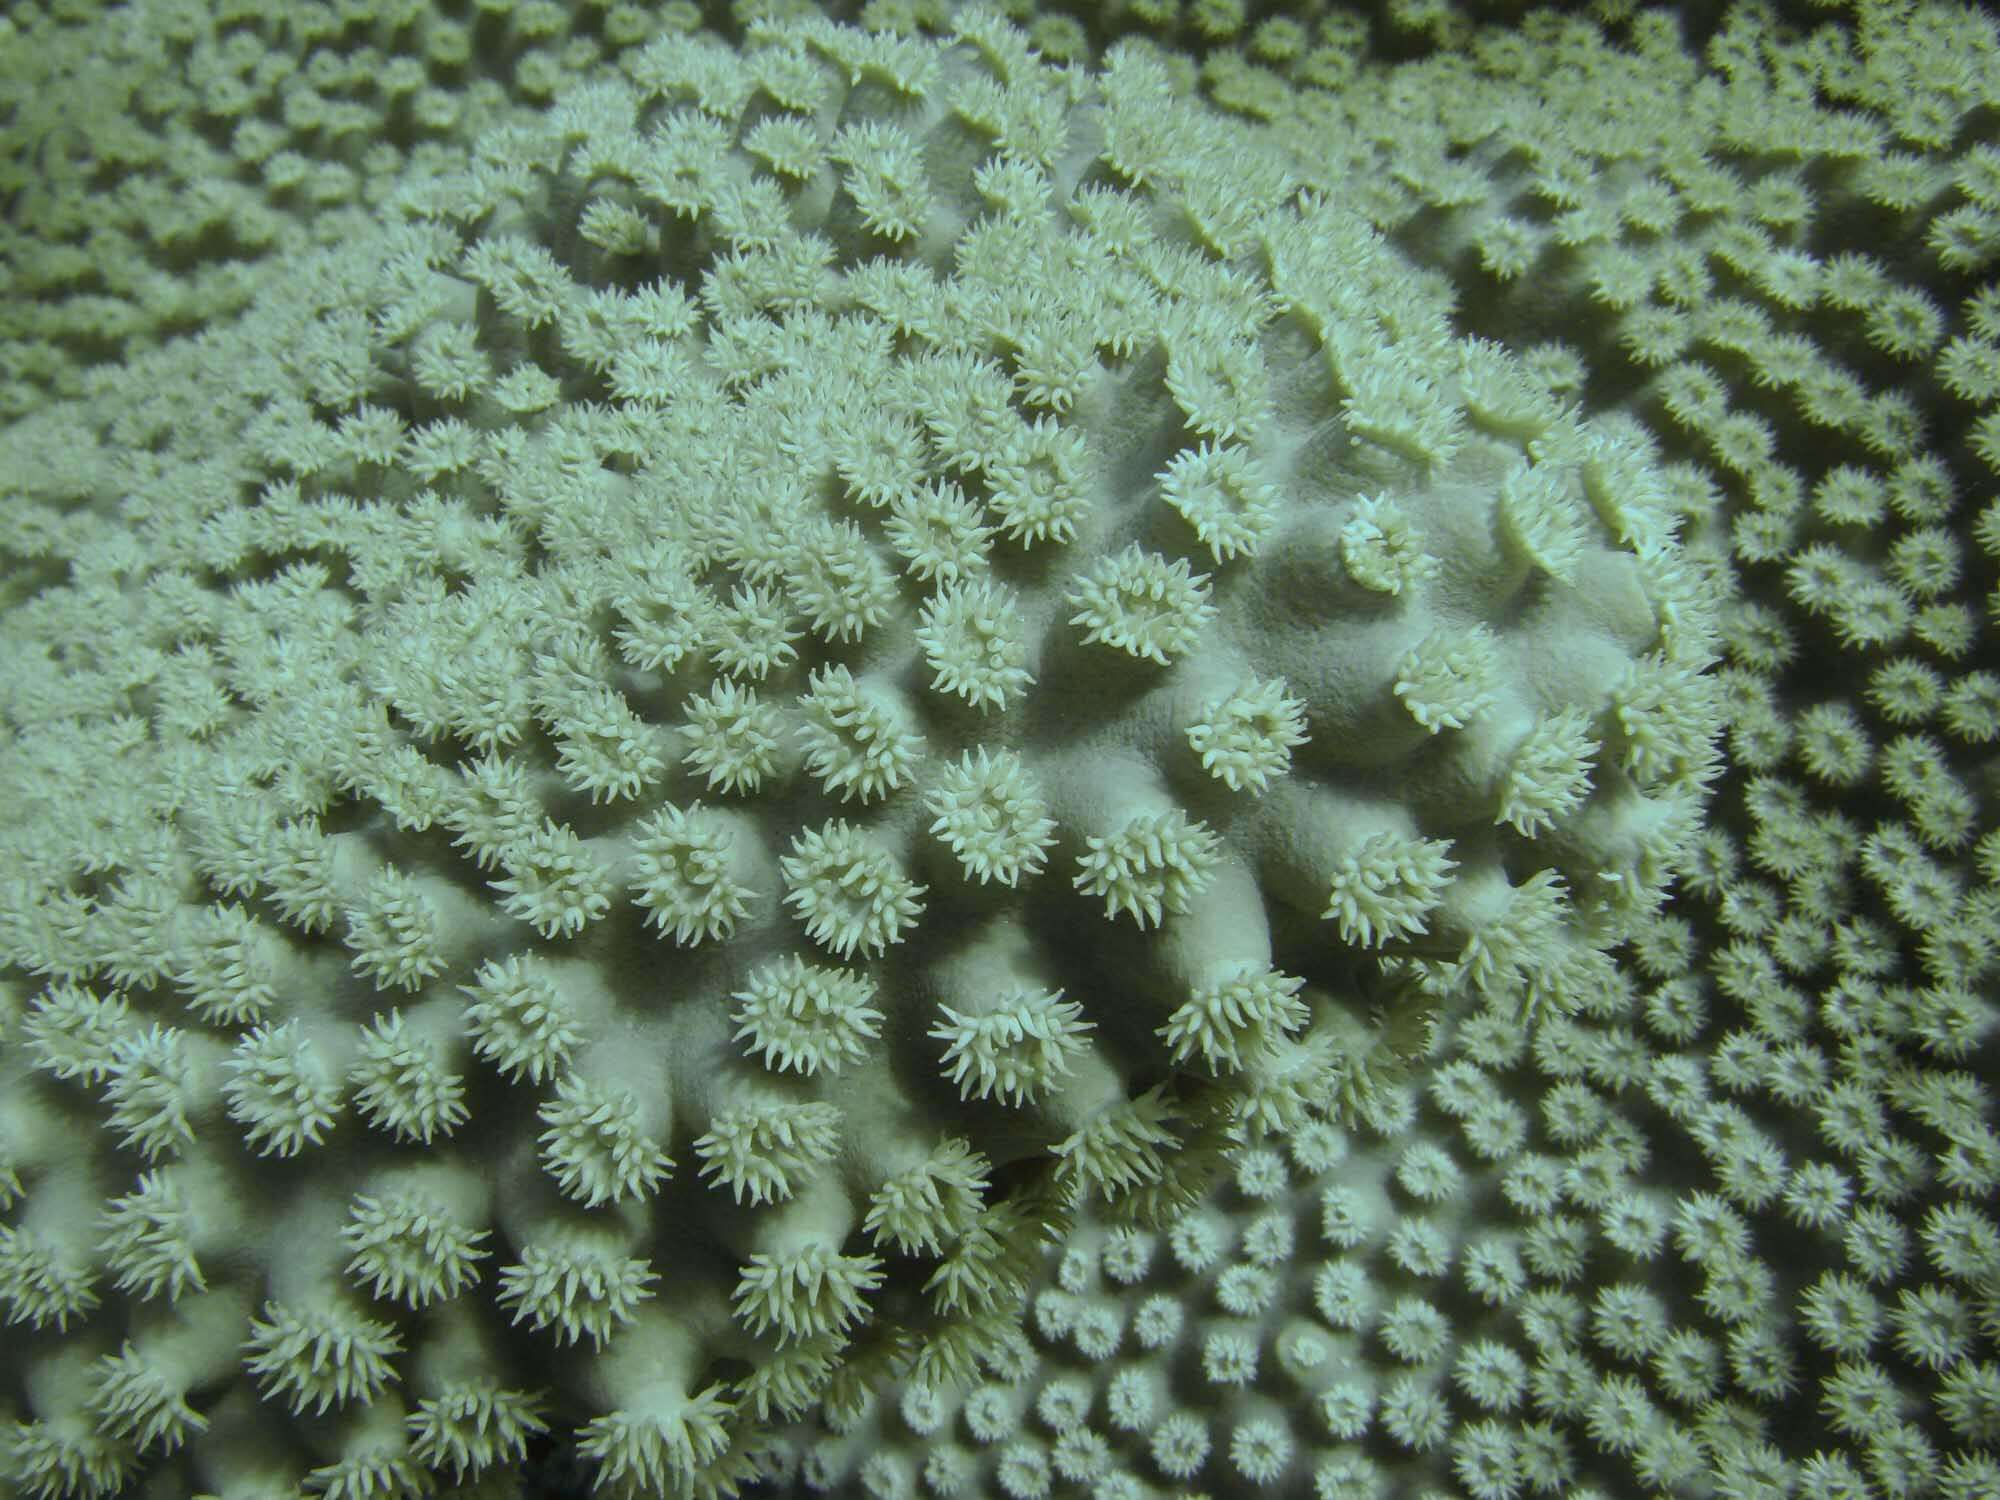 Image of Pagoda coral